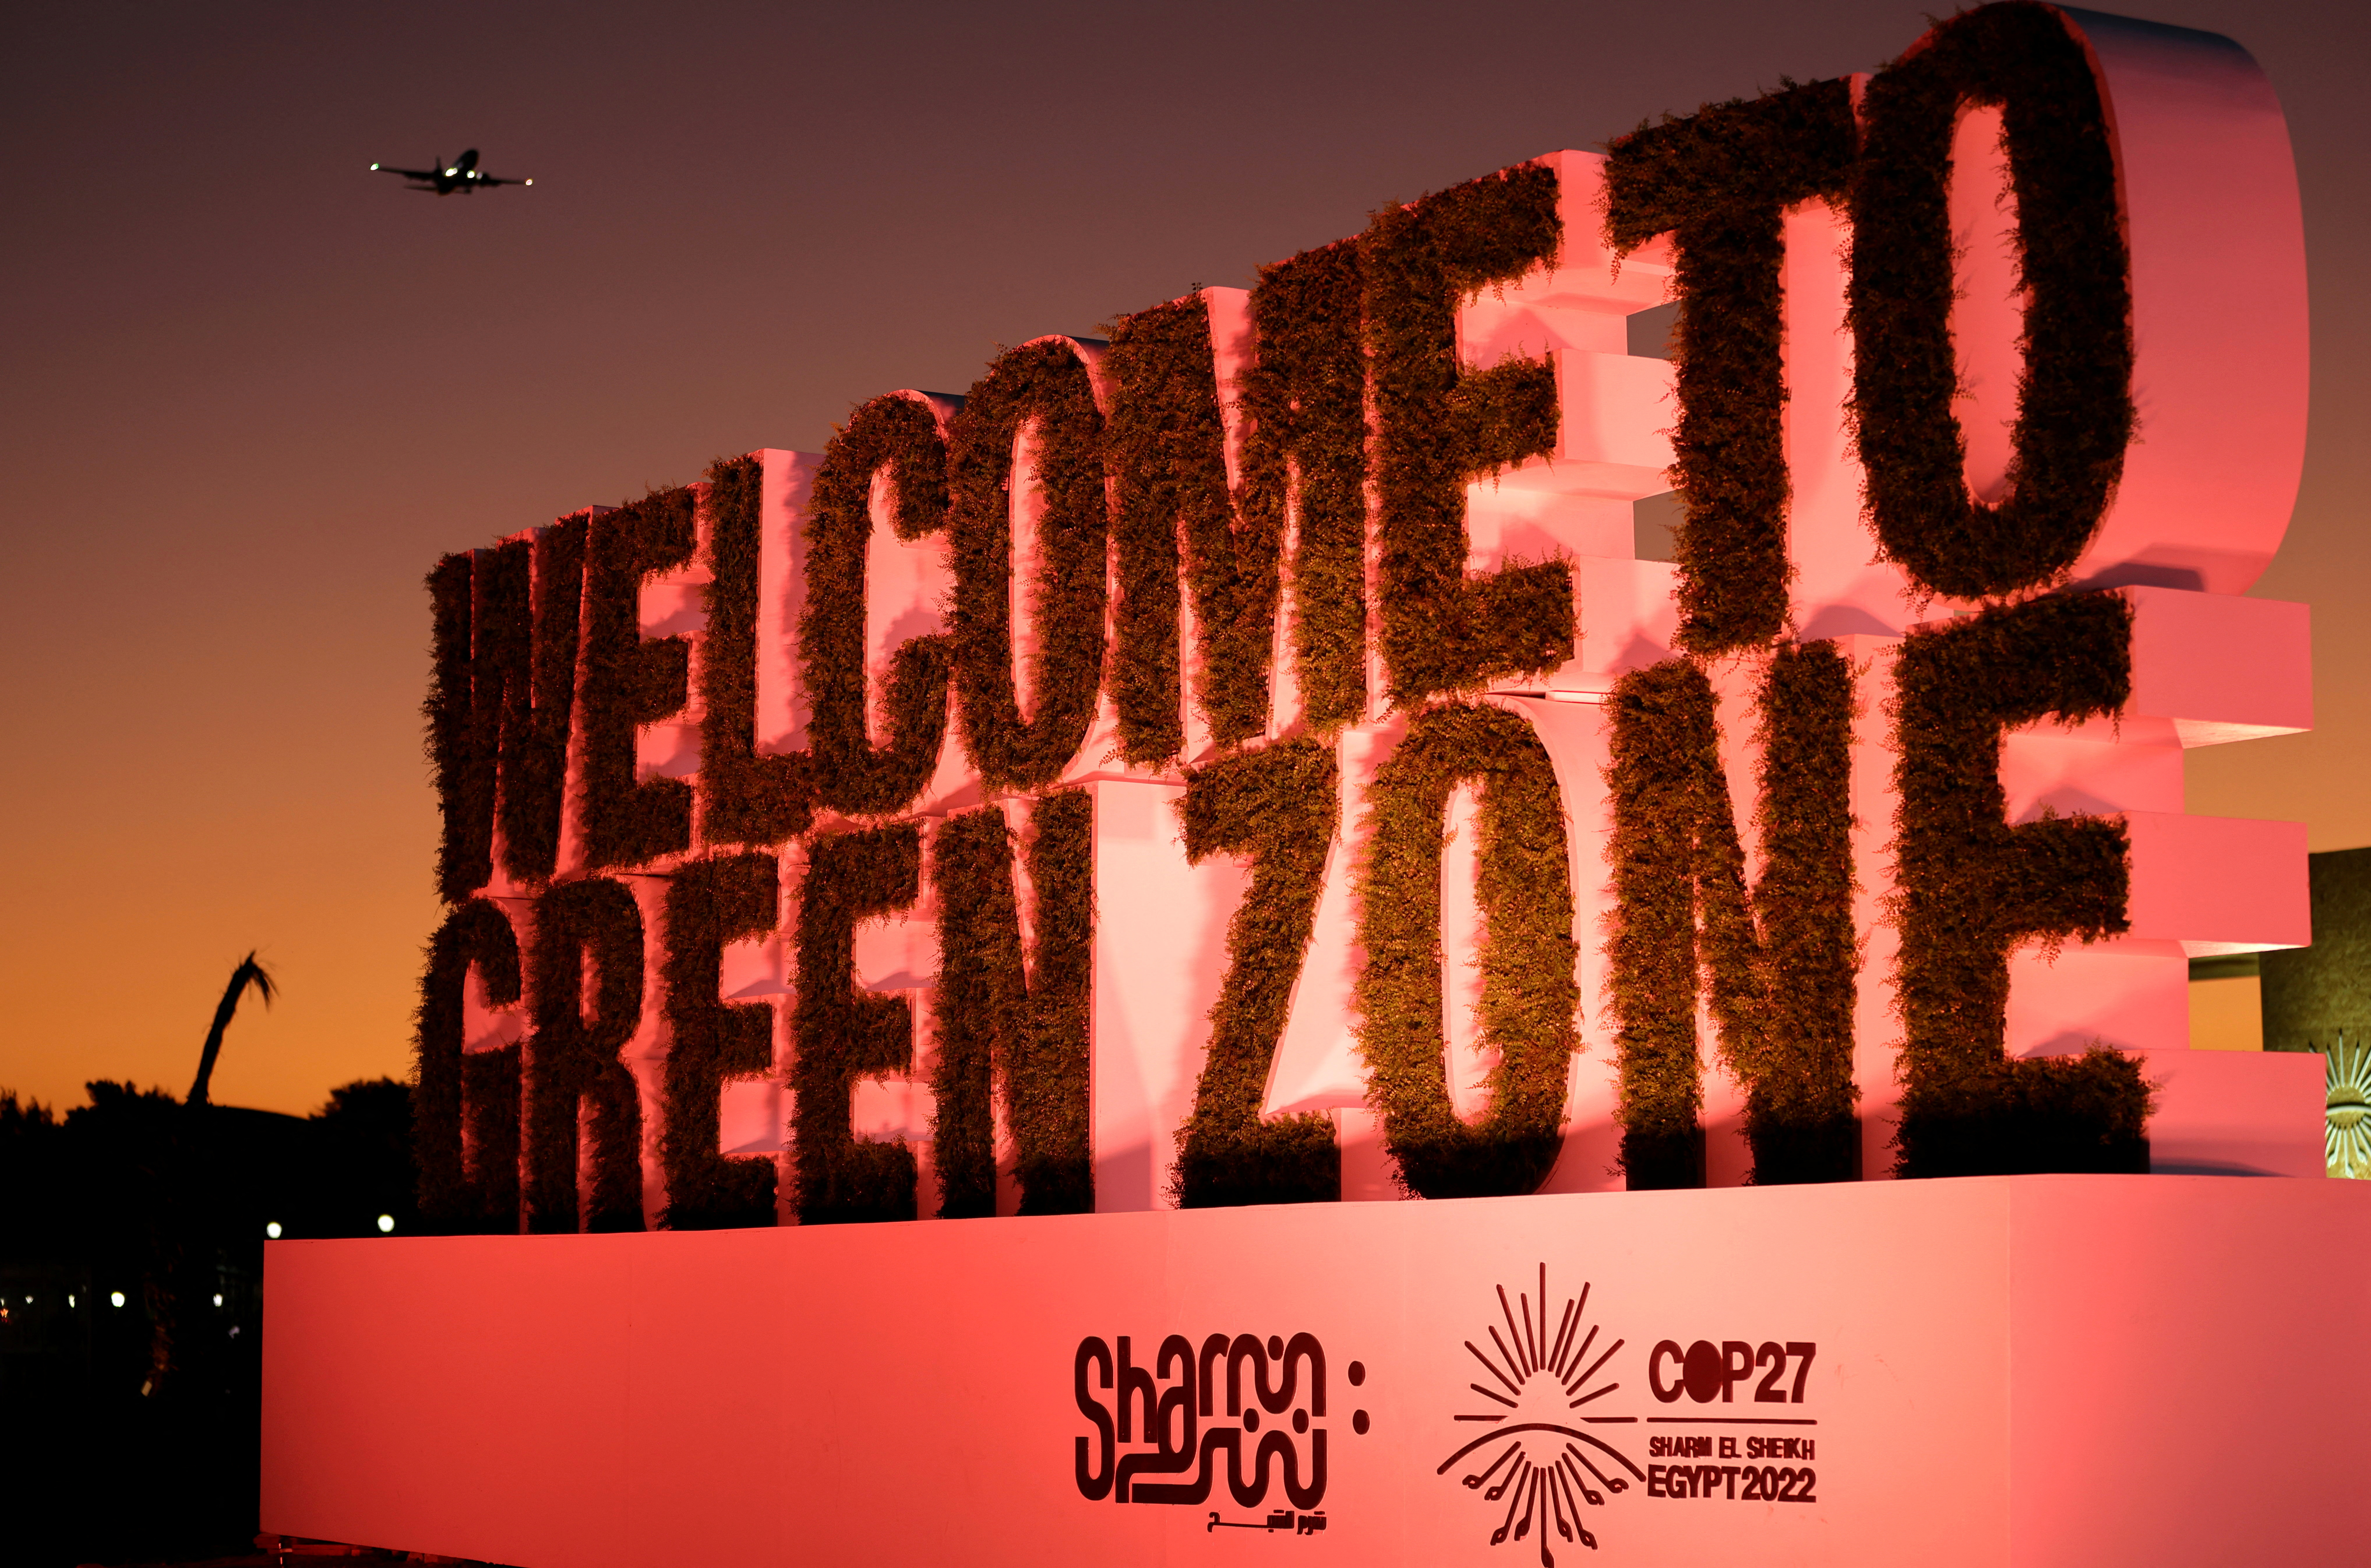 Vista del cartel de bienvenida a la zona verde durante la cumbre climática COP27 en Sharm el-Sheikh, Egipto, 10 de noviembre de 2022 (REUTERS/Mohamed Abd El Ghany)